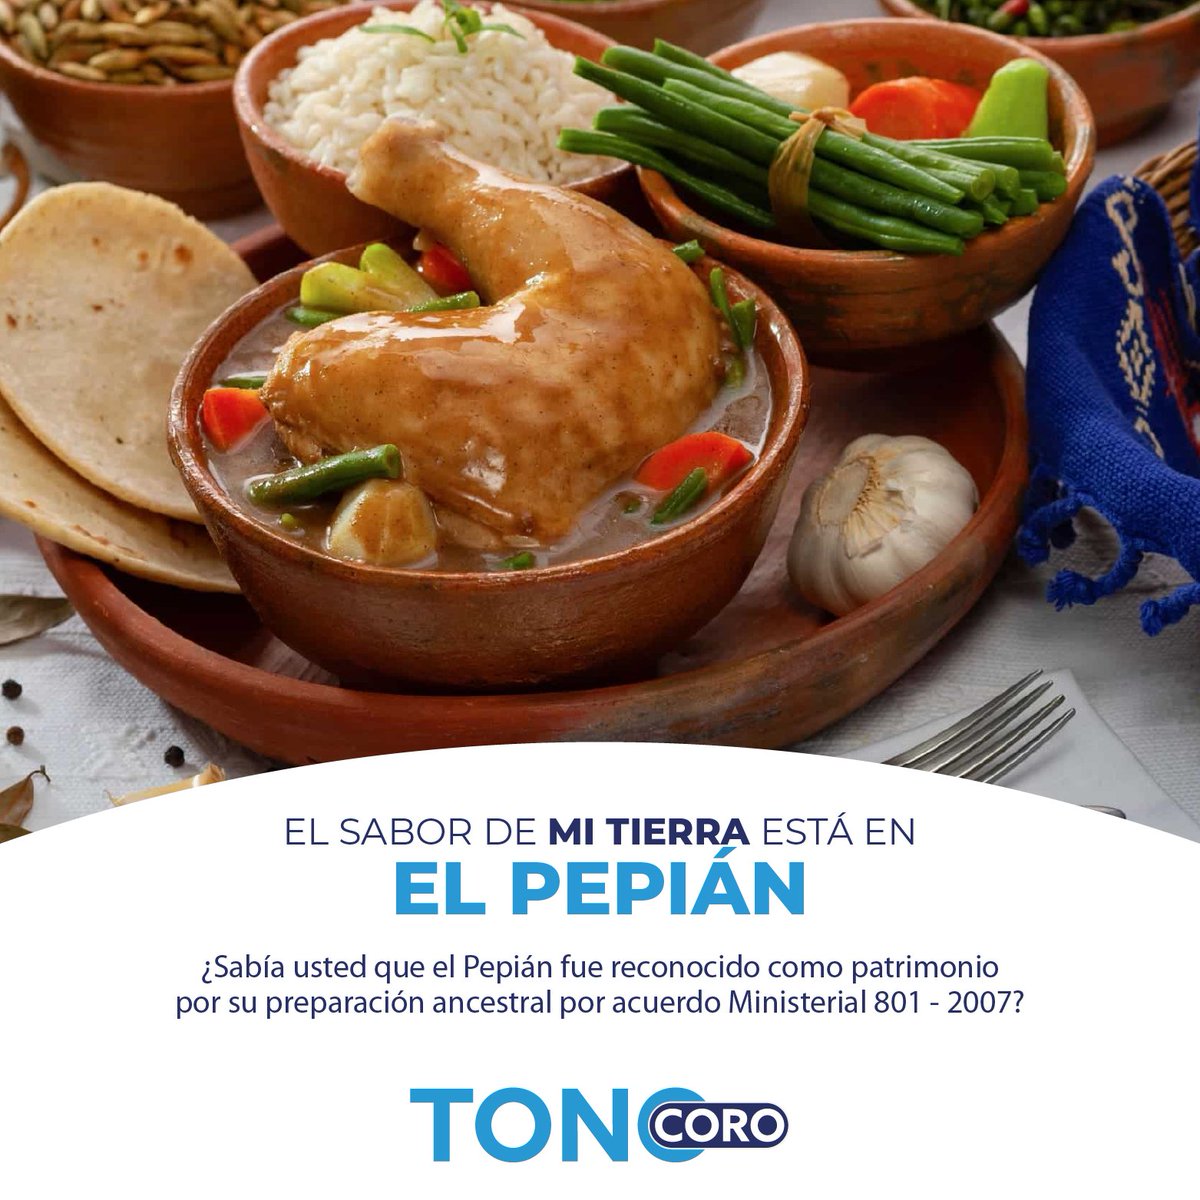 En el sabor de mi tierra, quiero presentarte el
Pepián, un recado guatemalteco lleno de
sabor ¿Sabías que puedes disfrutarlo con
arroz o sin arroz, según tus preferencias? Si ya lo has probado, cuéntame tu experiencia. 🍛

#saboresdemitierra
#platillotipico